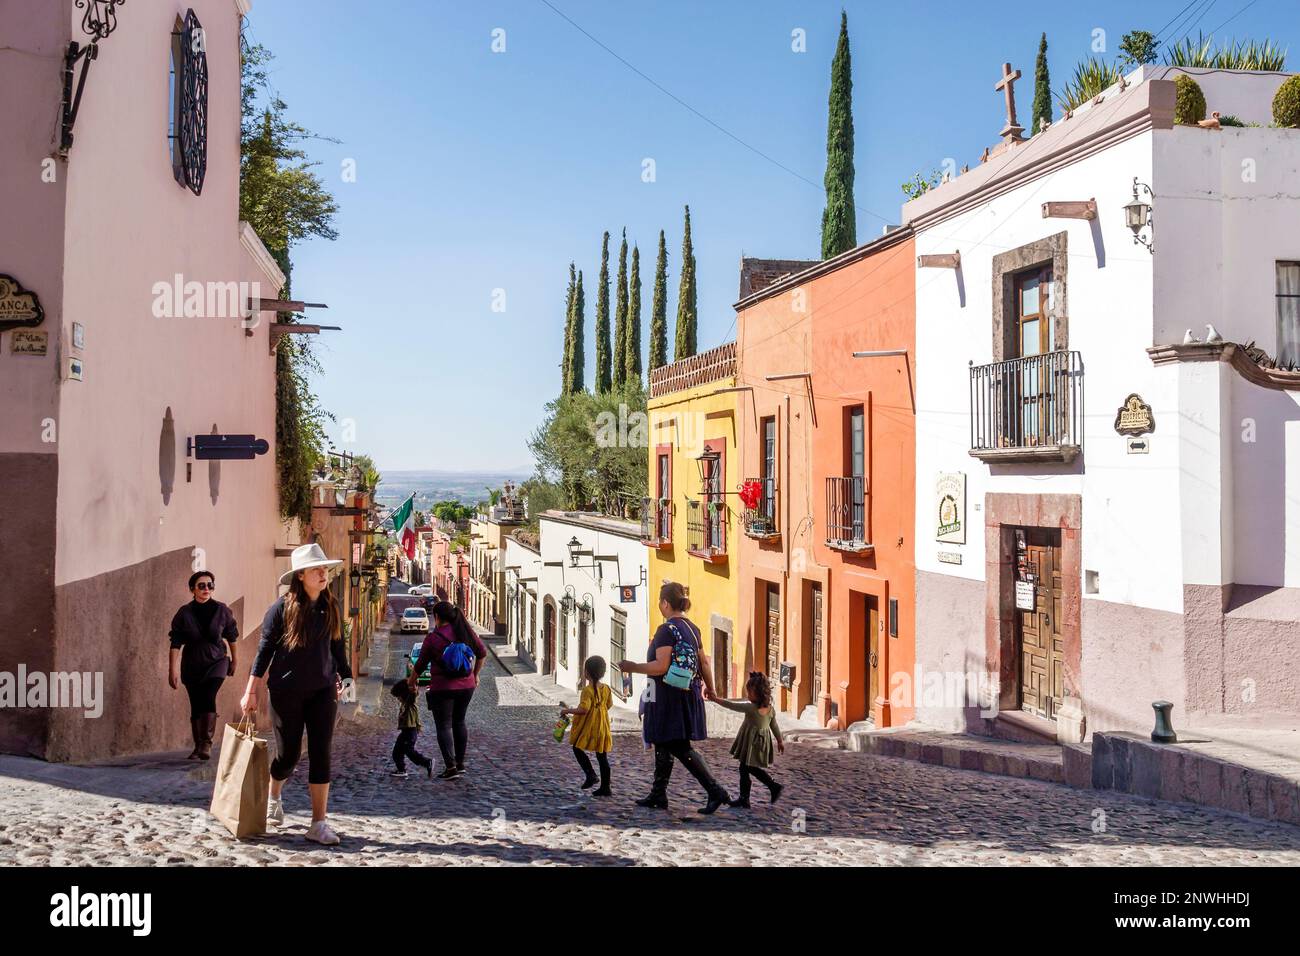 San Miguel de Allende Guanajuato Mexique, Historico Centre historique central centre, rue pavée, maisons résidences, architecture coloniale, femmes Banque D'Images